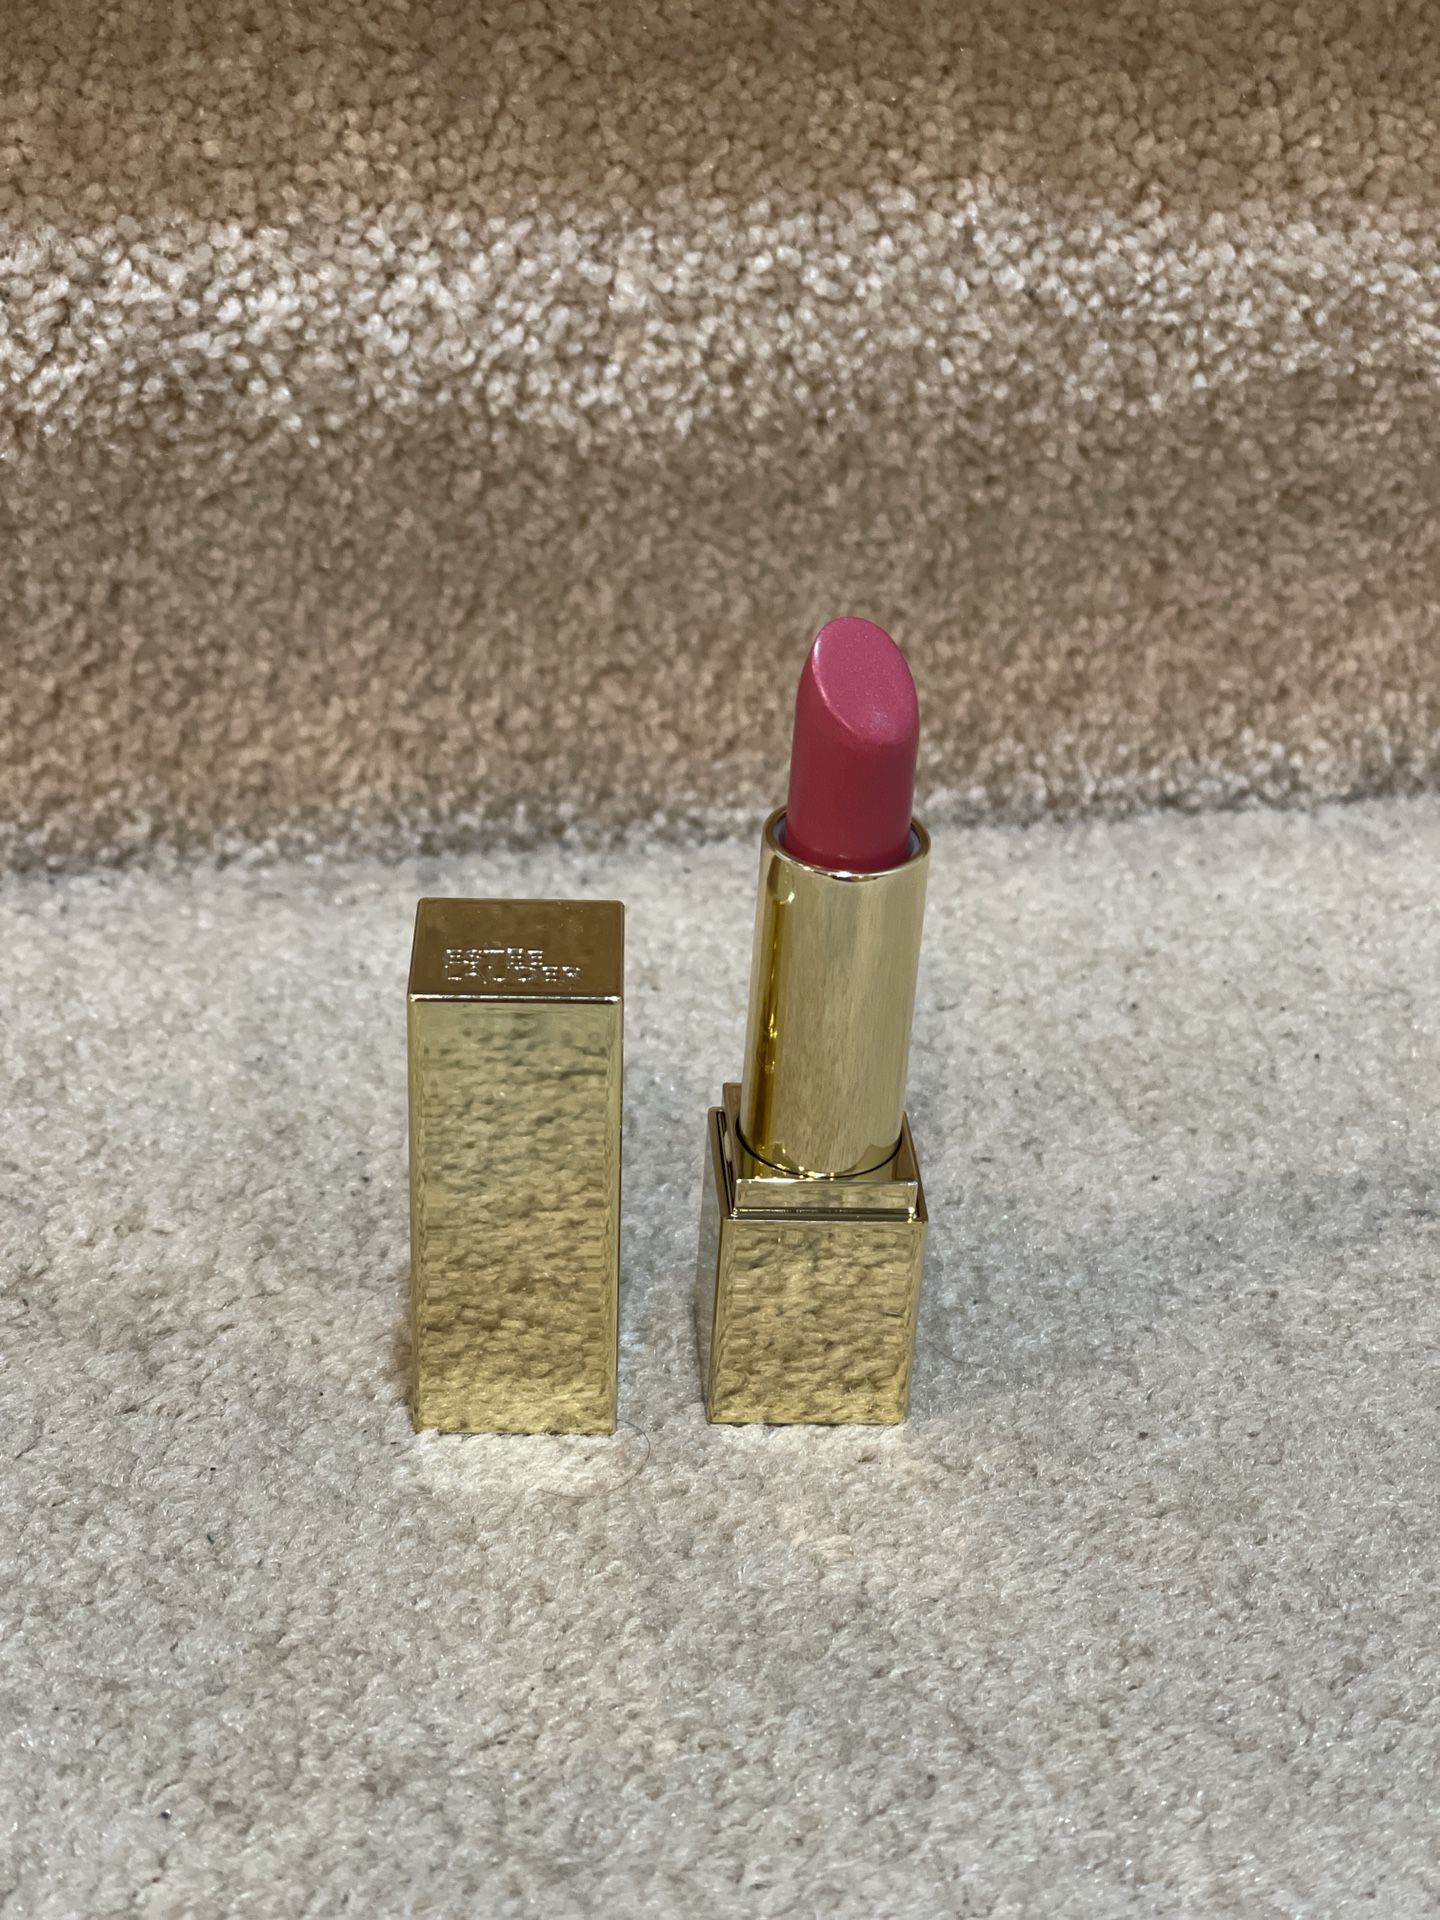 Estée Lauder limited edition lipstick